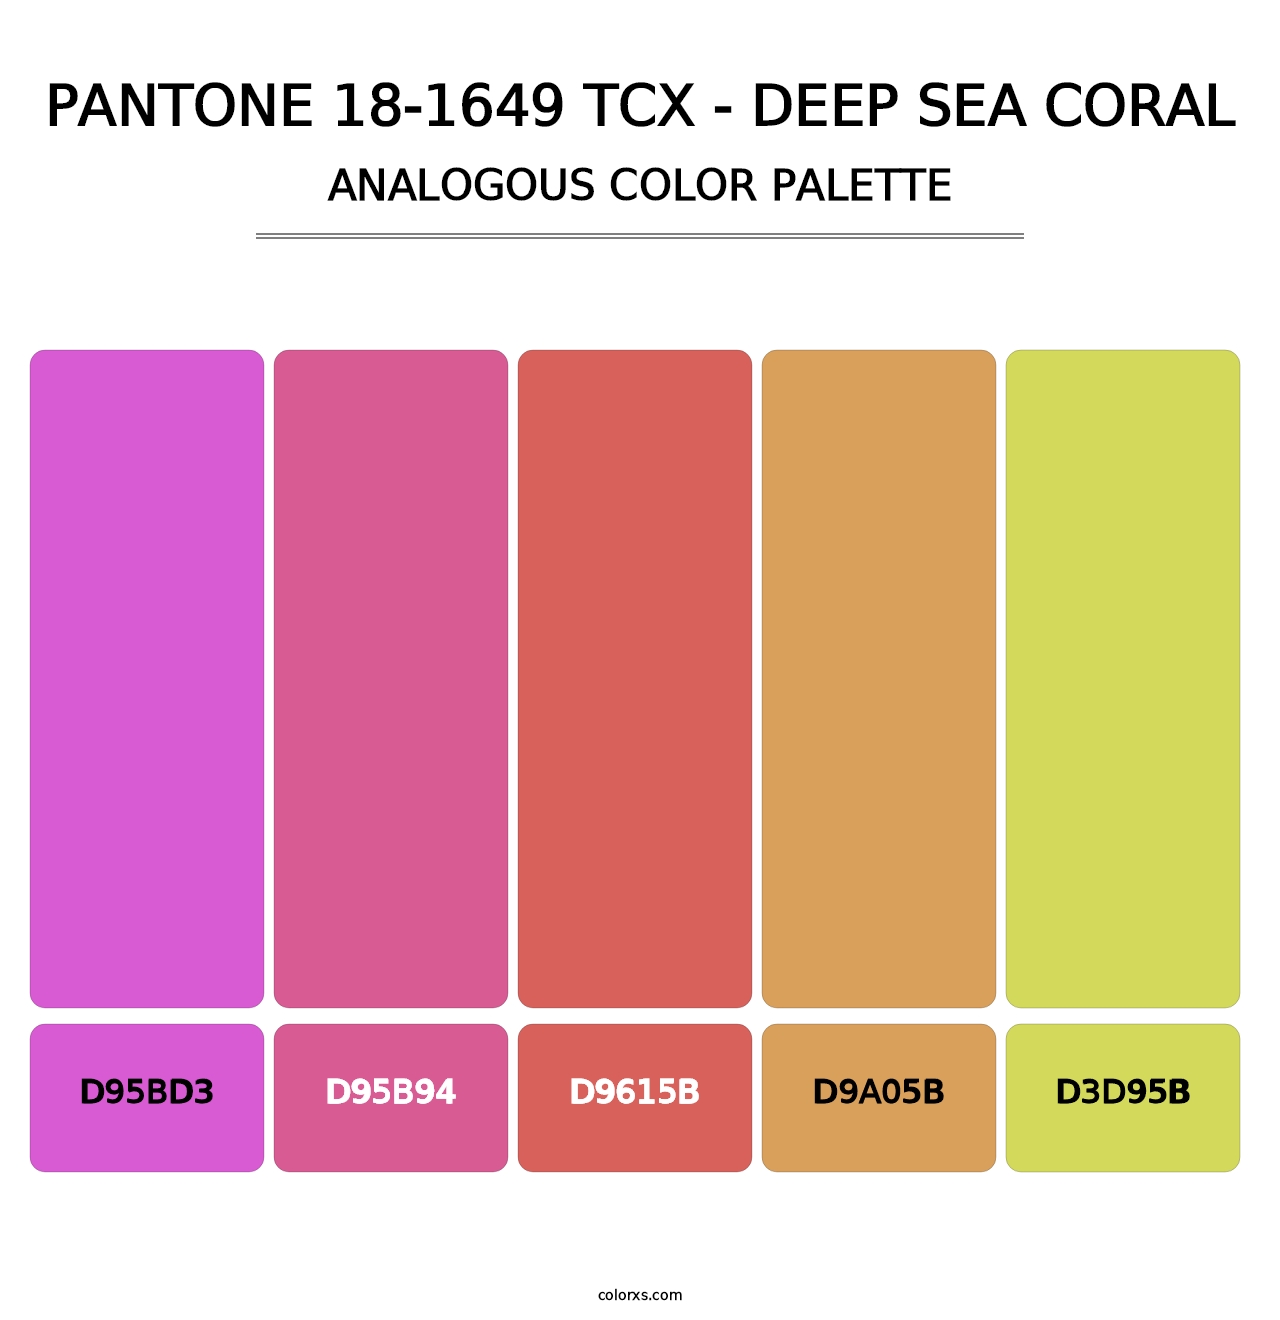 PANTONE 18-1649 TCX - Deep Sea Coral - Analogous Color Palette